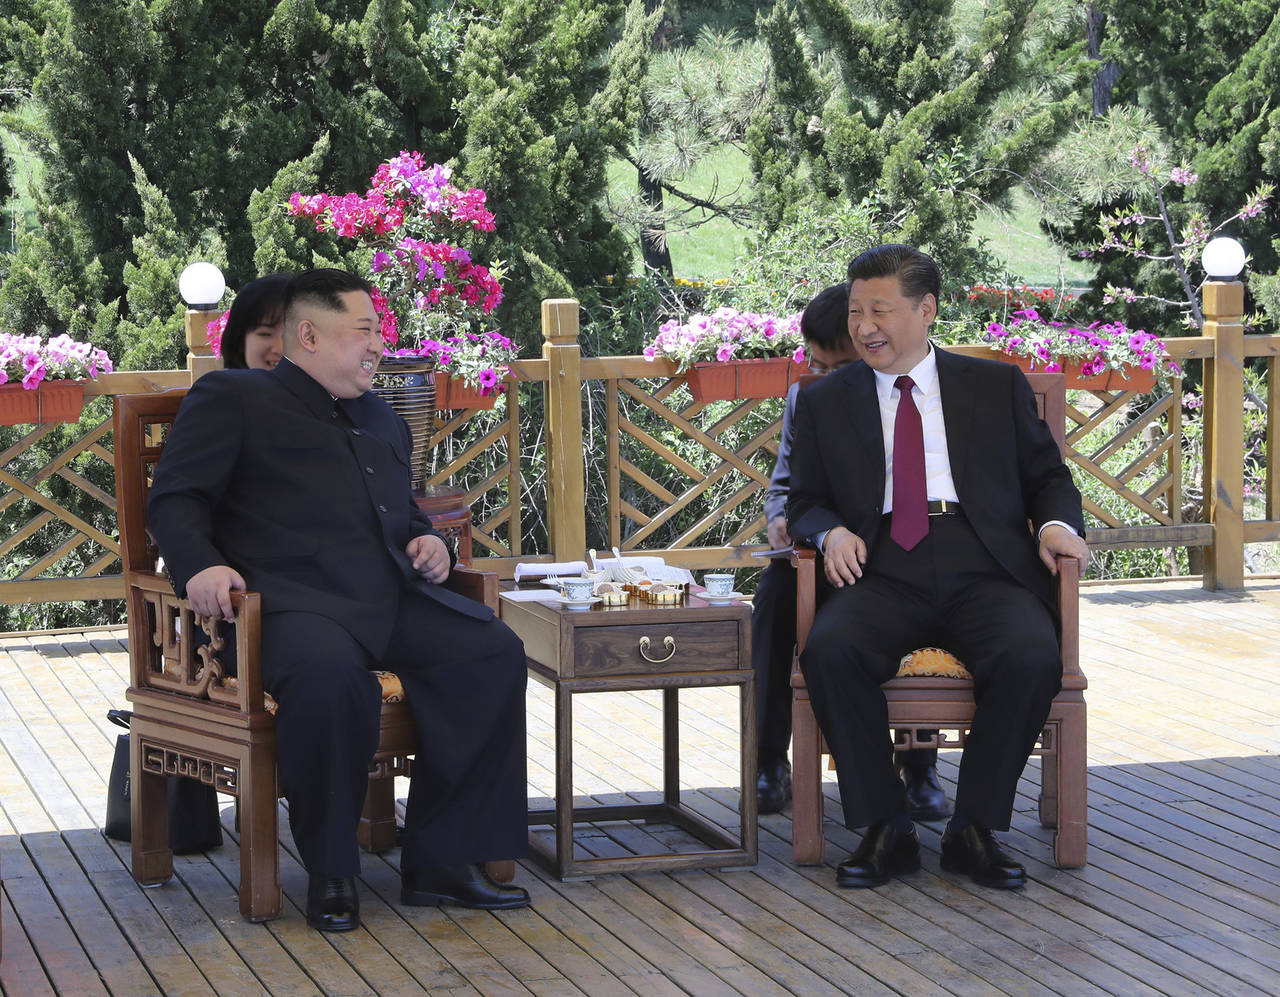 Encuentro. Las imágenes divulgadas por la televisión estatal china muestran un ambiente cordial entre Xi y Kim, ya que además de las reuniones formales con sus respectivas delegaciones ambos líderes también aparecen acompañados únicamente por sus intérpretes. (AP)